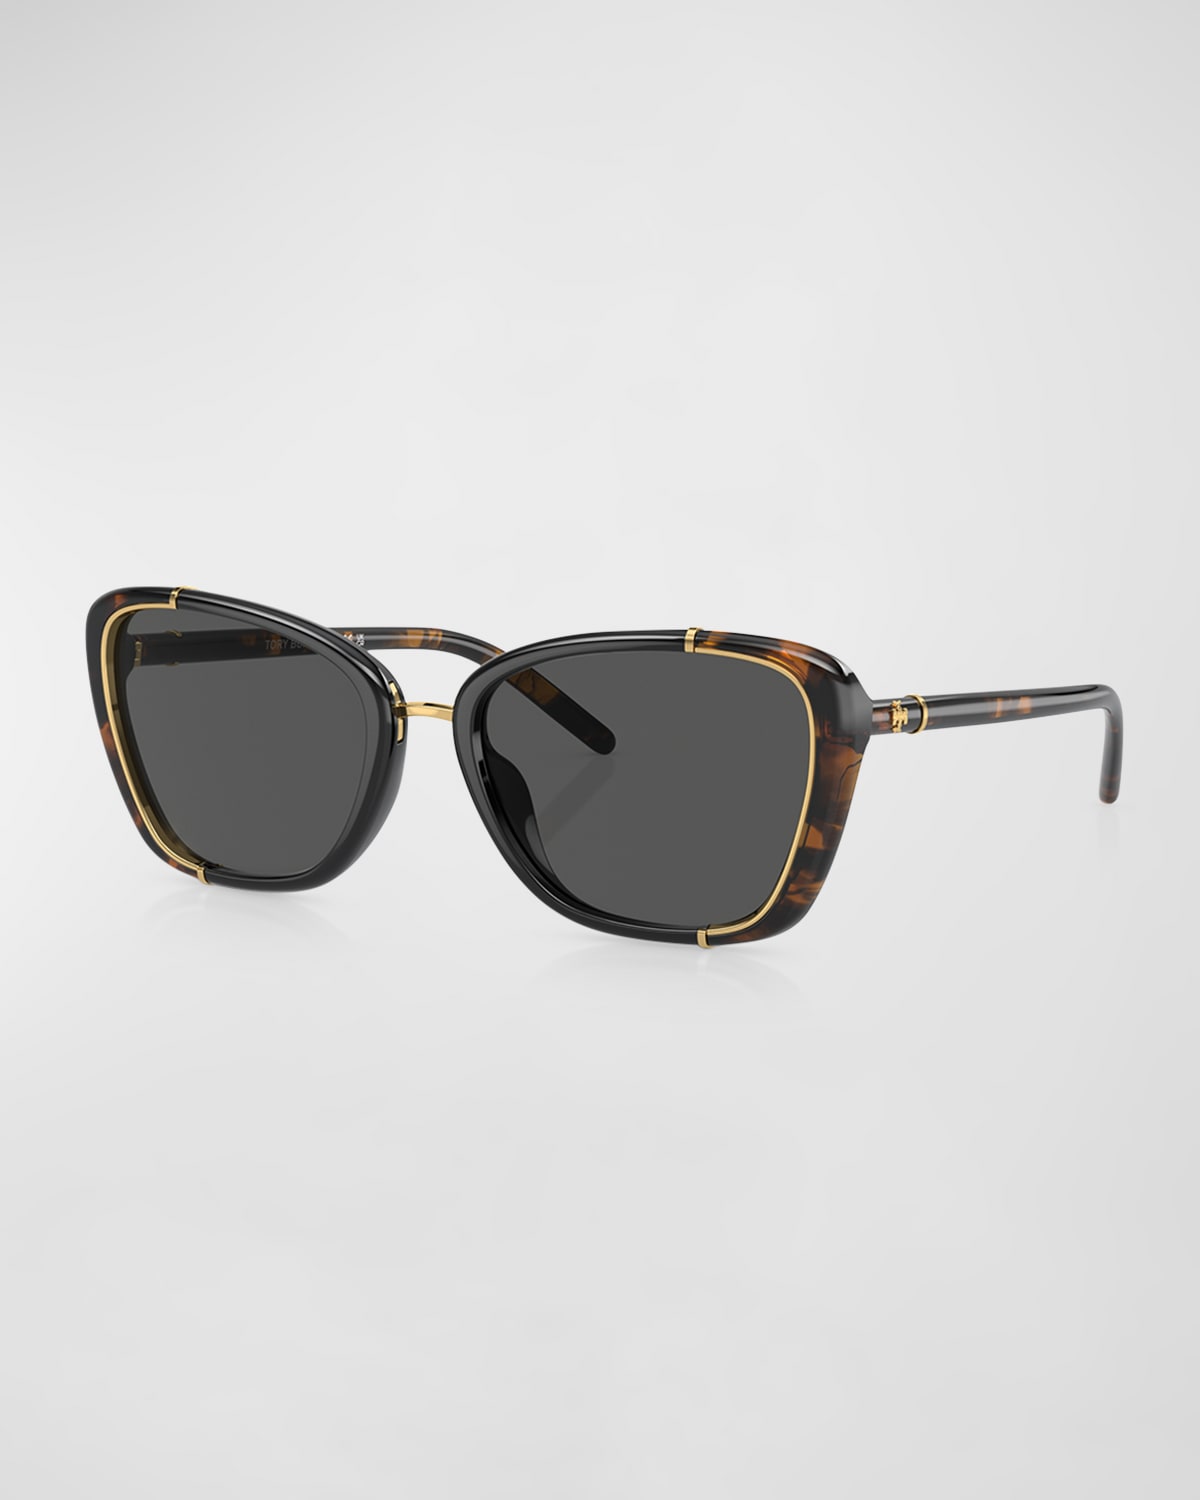 Tory Burch Two-tone Acetate & Metal Cat-eye Sunglasses In Dark Tort